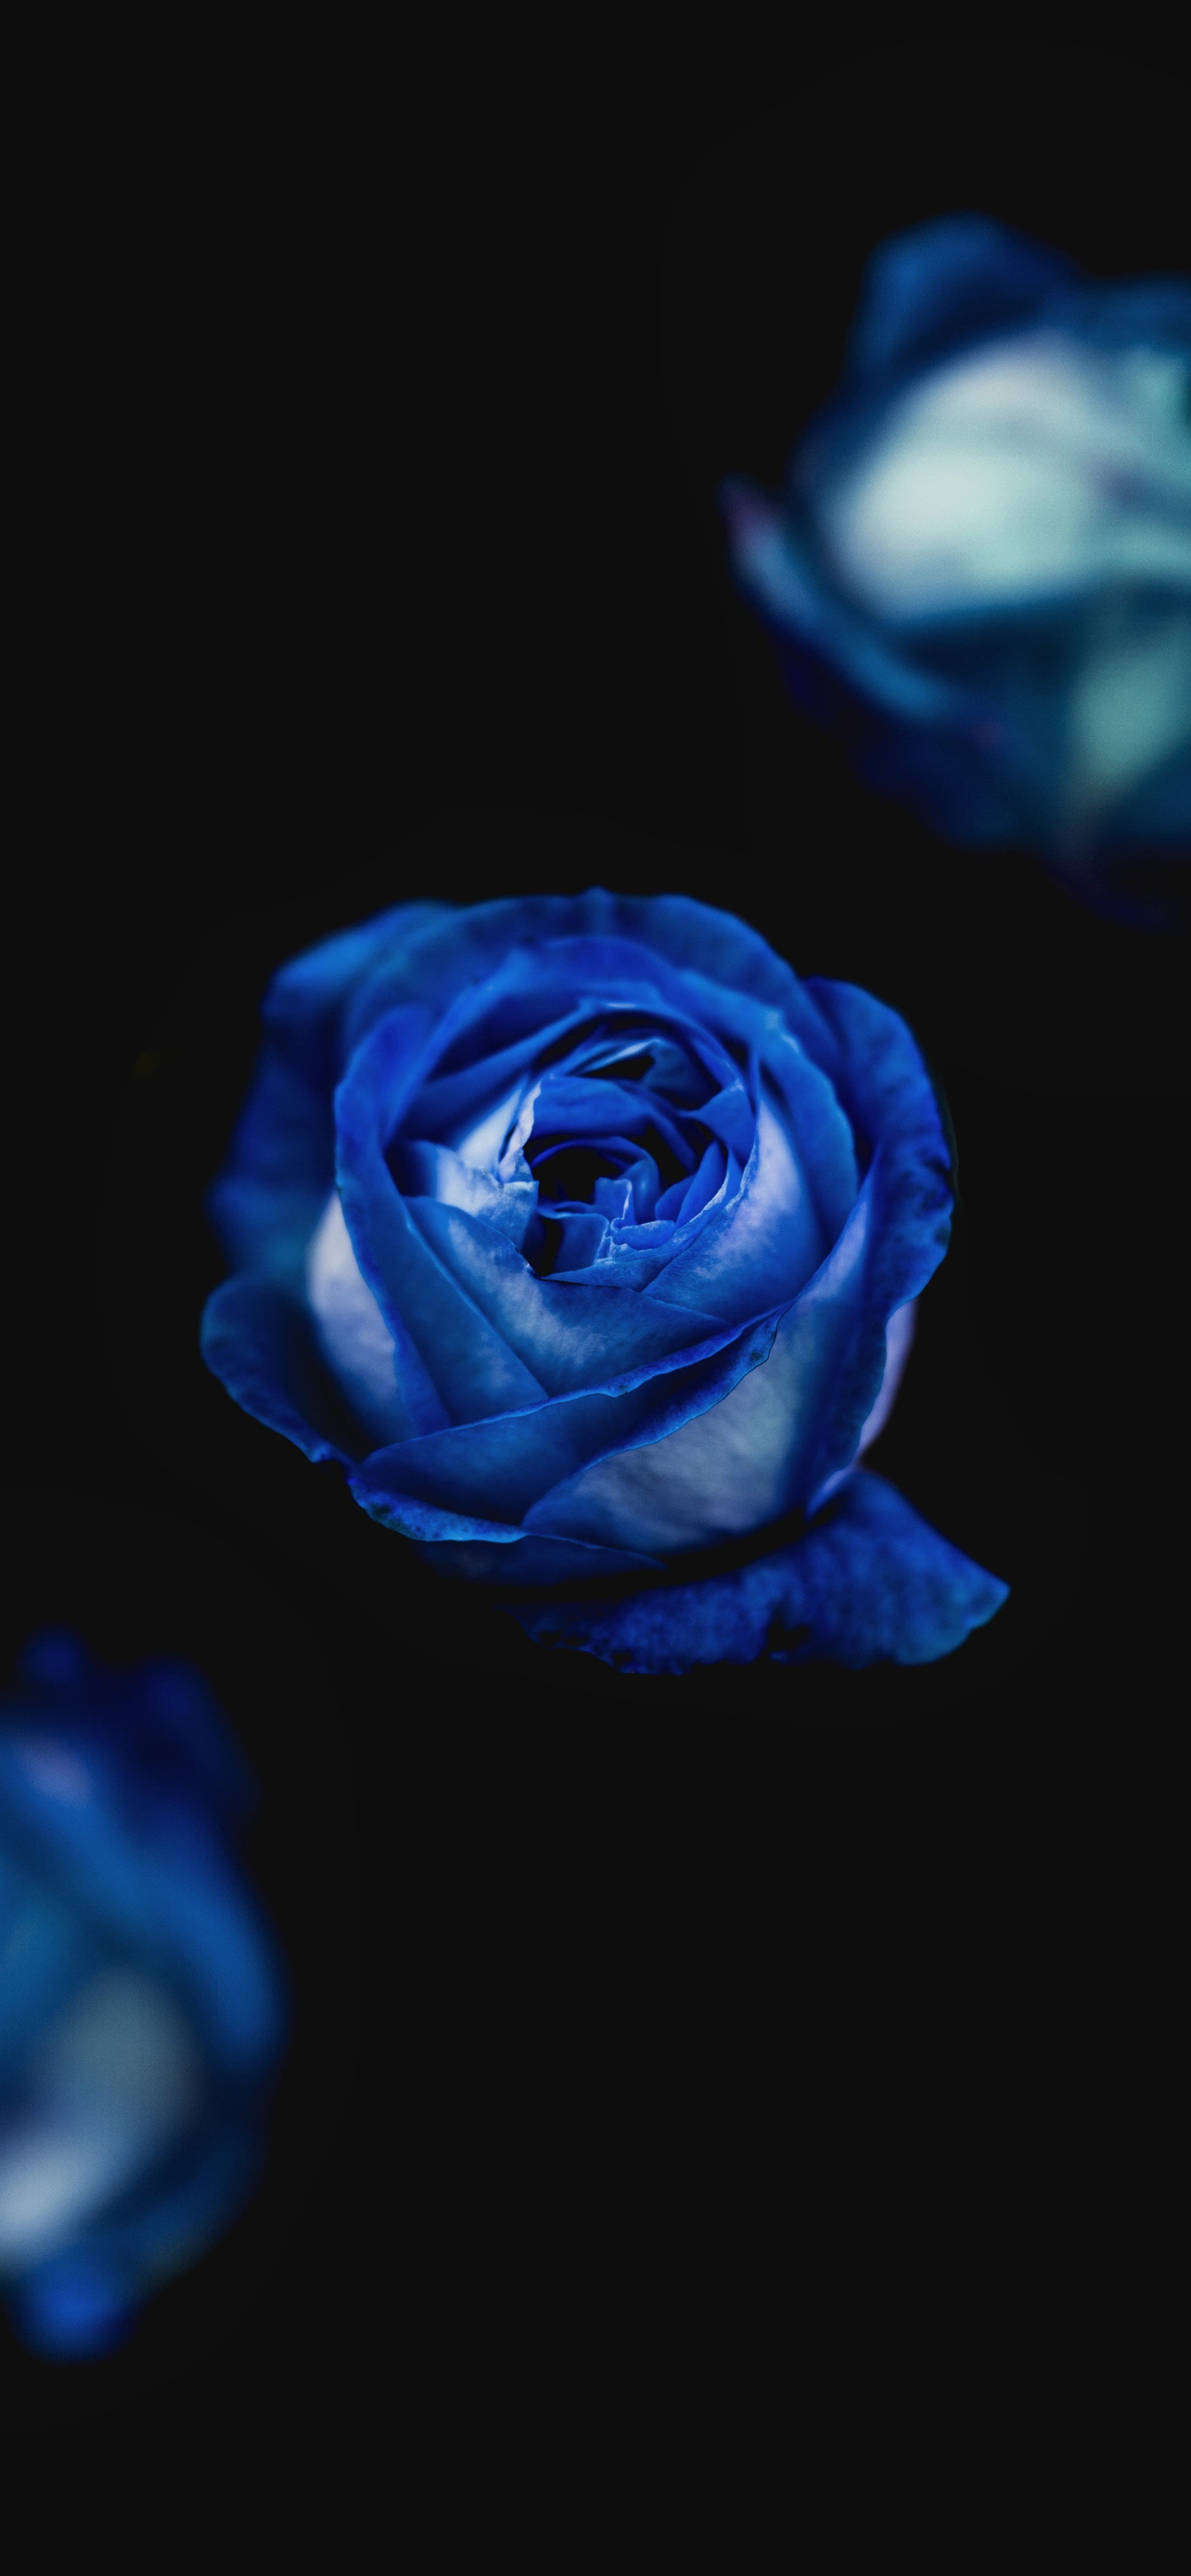 Hình nền tuyệt đẹp hoa hồng xanh dành cho Desktop